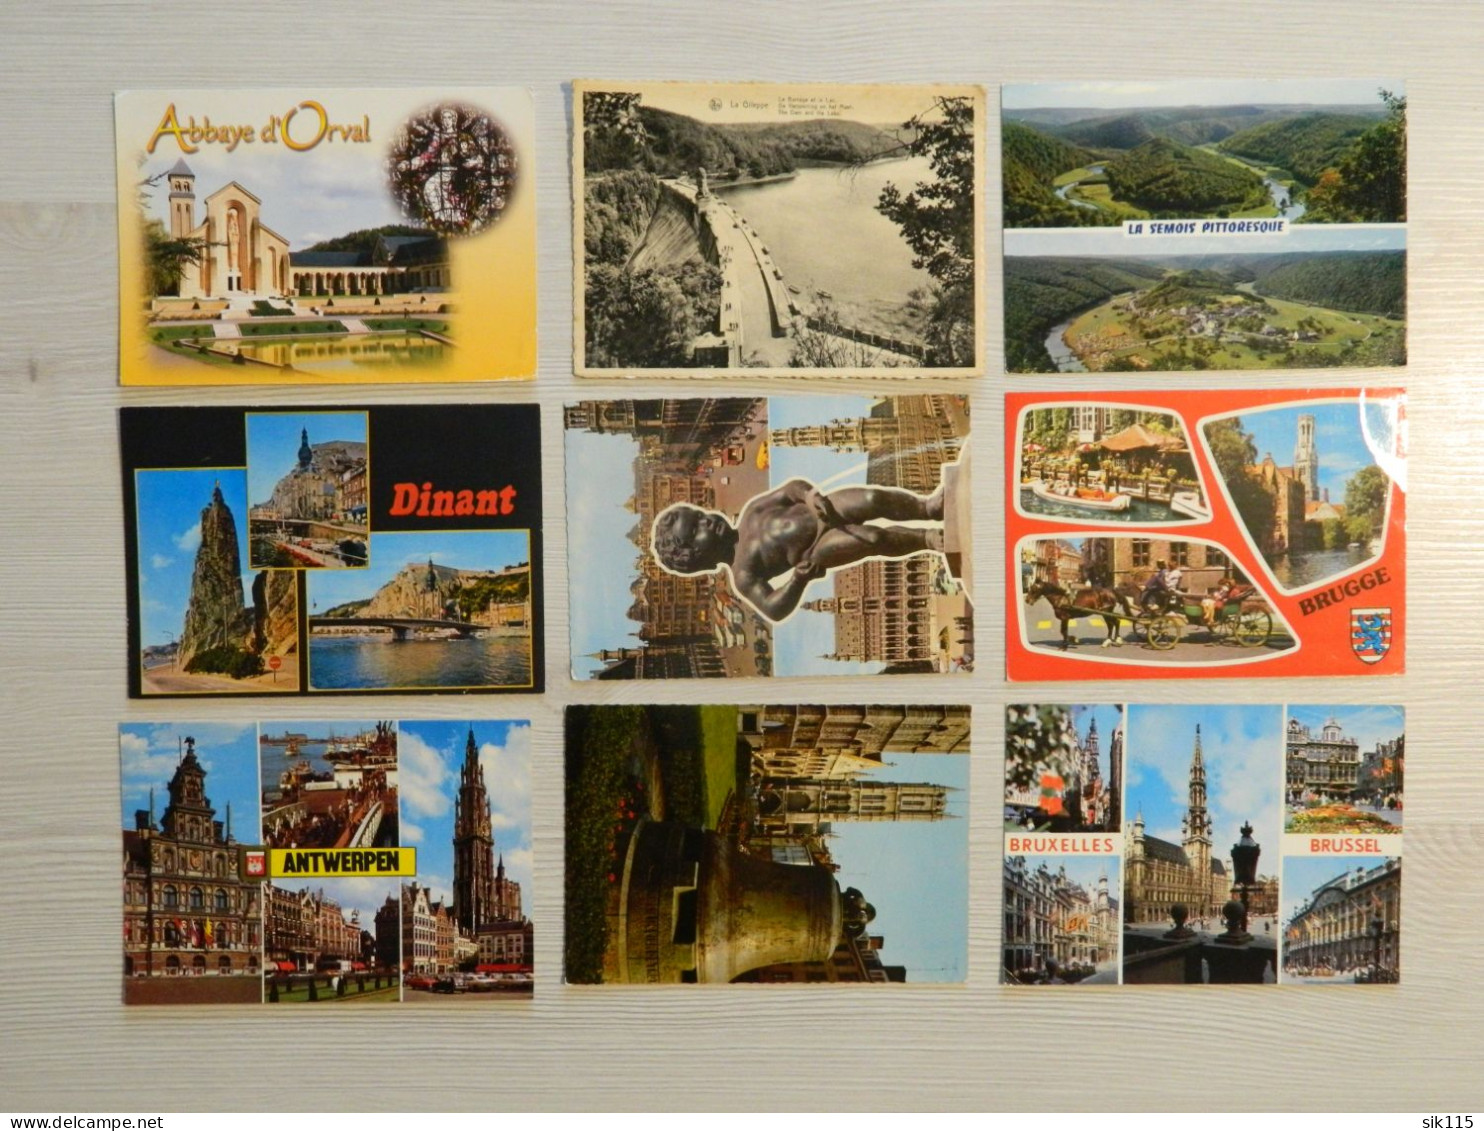 Gros LOT 4,8 Kg de Carte Postale FRANCE Belgique monde timbre cachet humour carte géographique animaux multivues